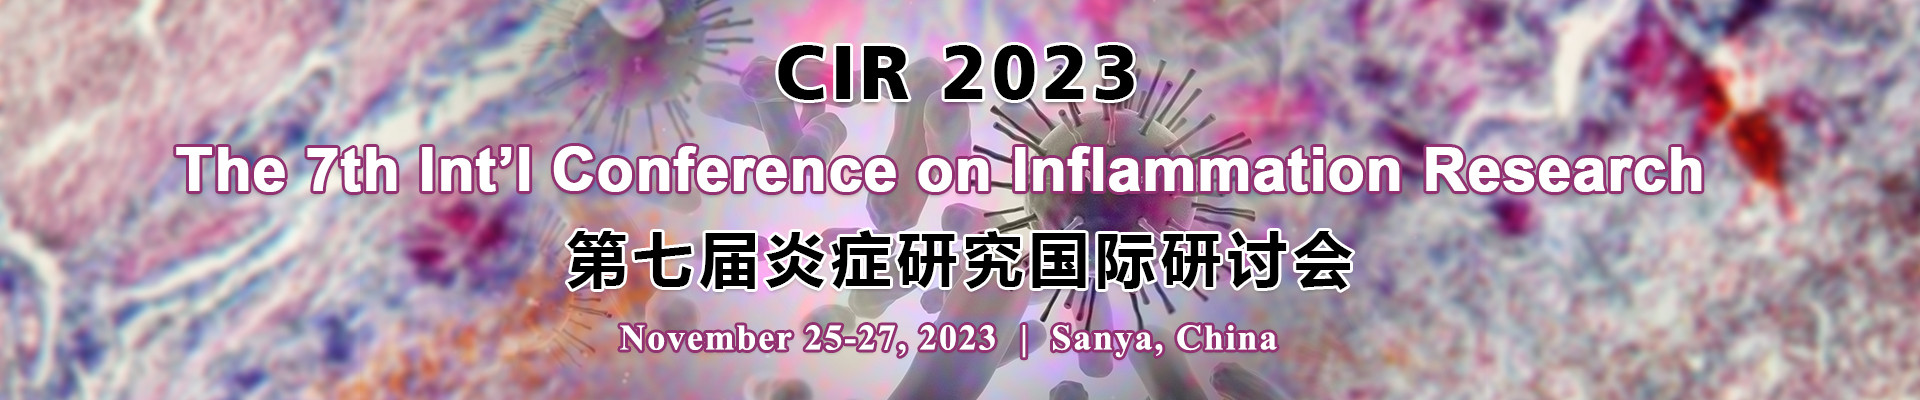 第七屆炎癥研究國際研討會(CIR 2023)?